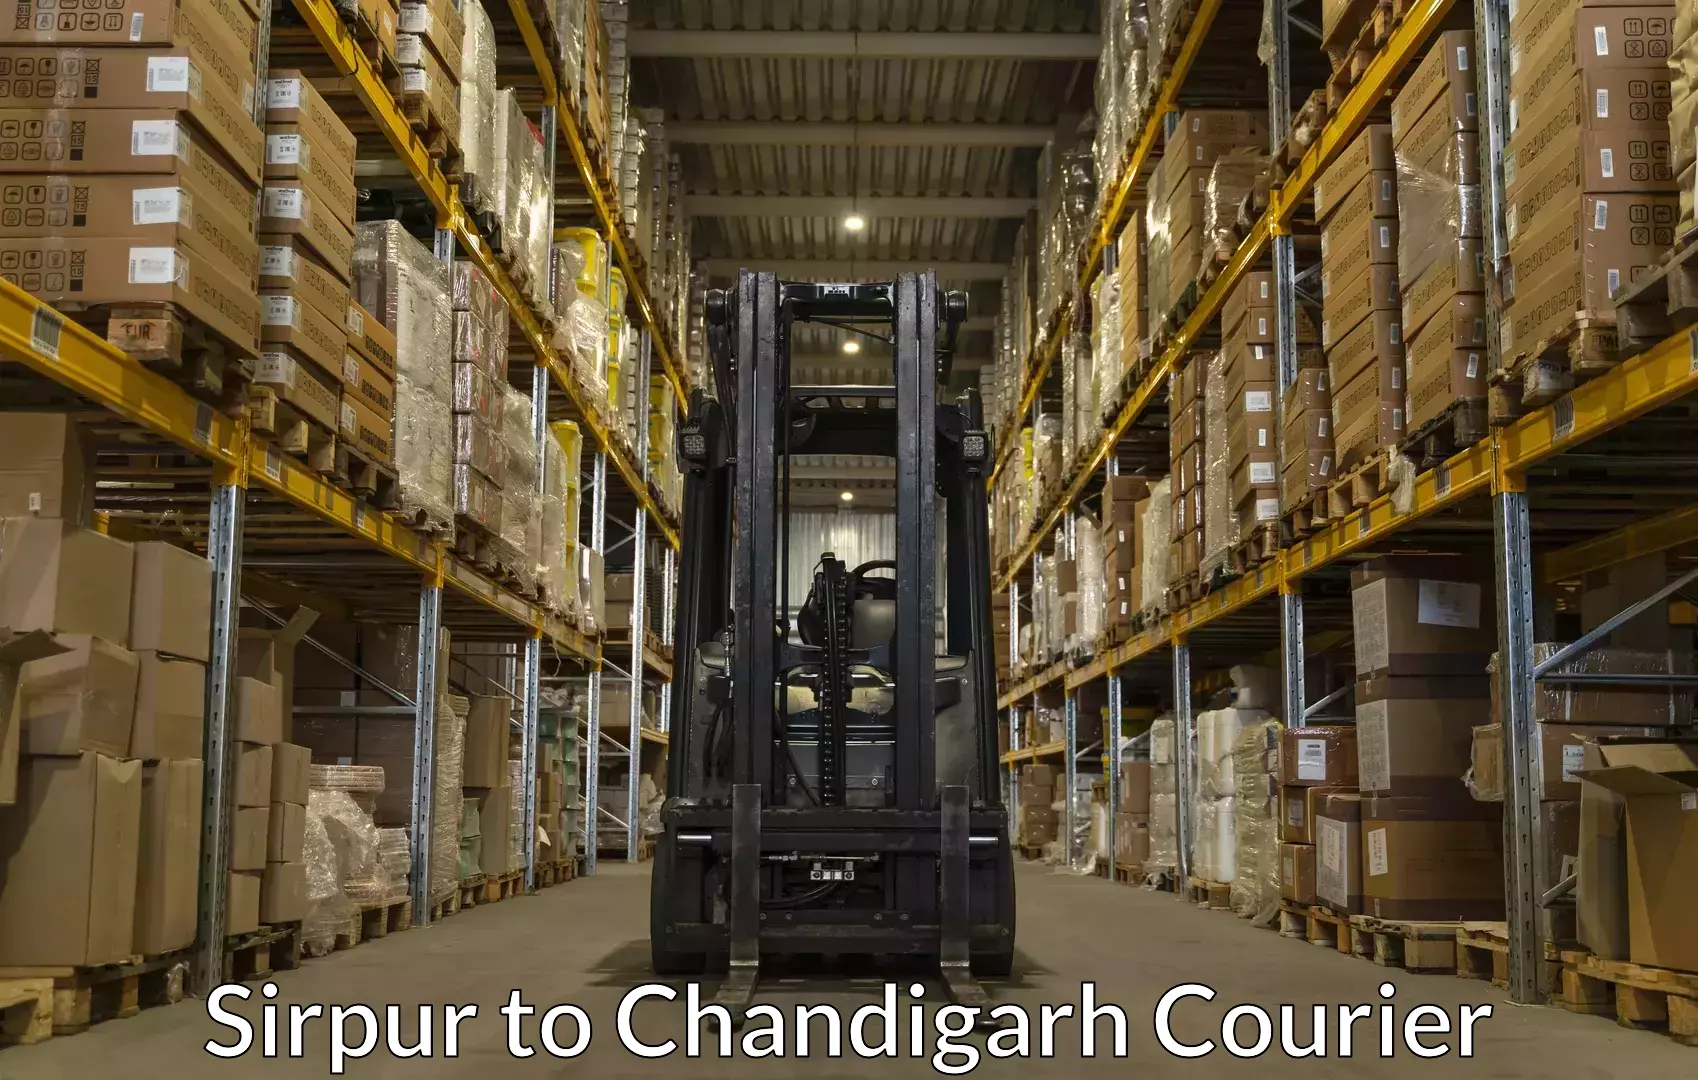 Baggage transport scheduler Sirpur to Chandigarh